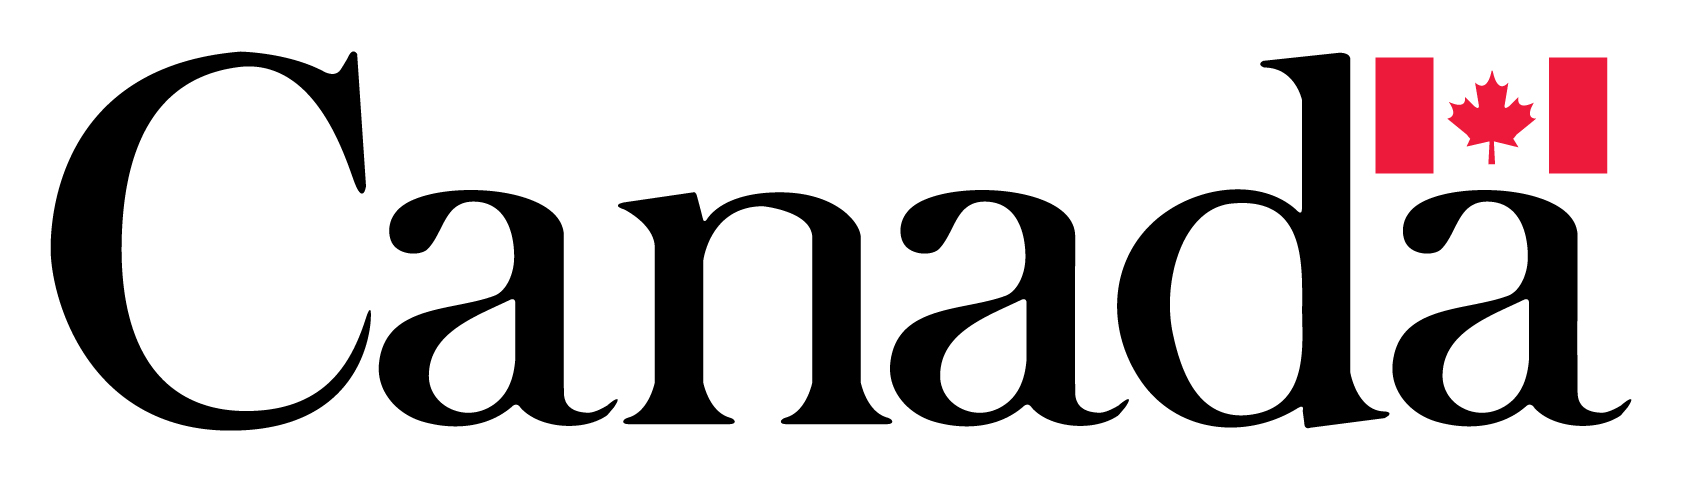 gove canada logo